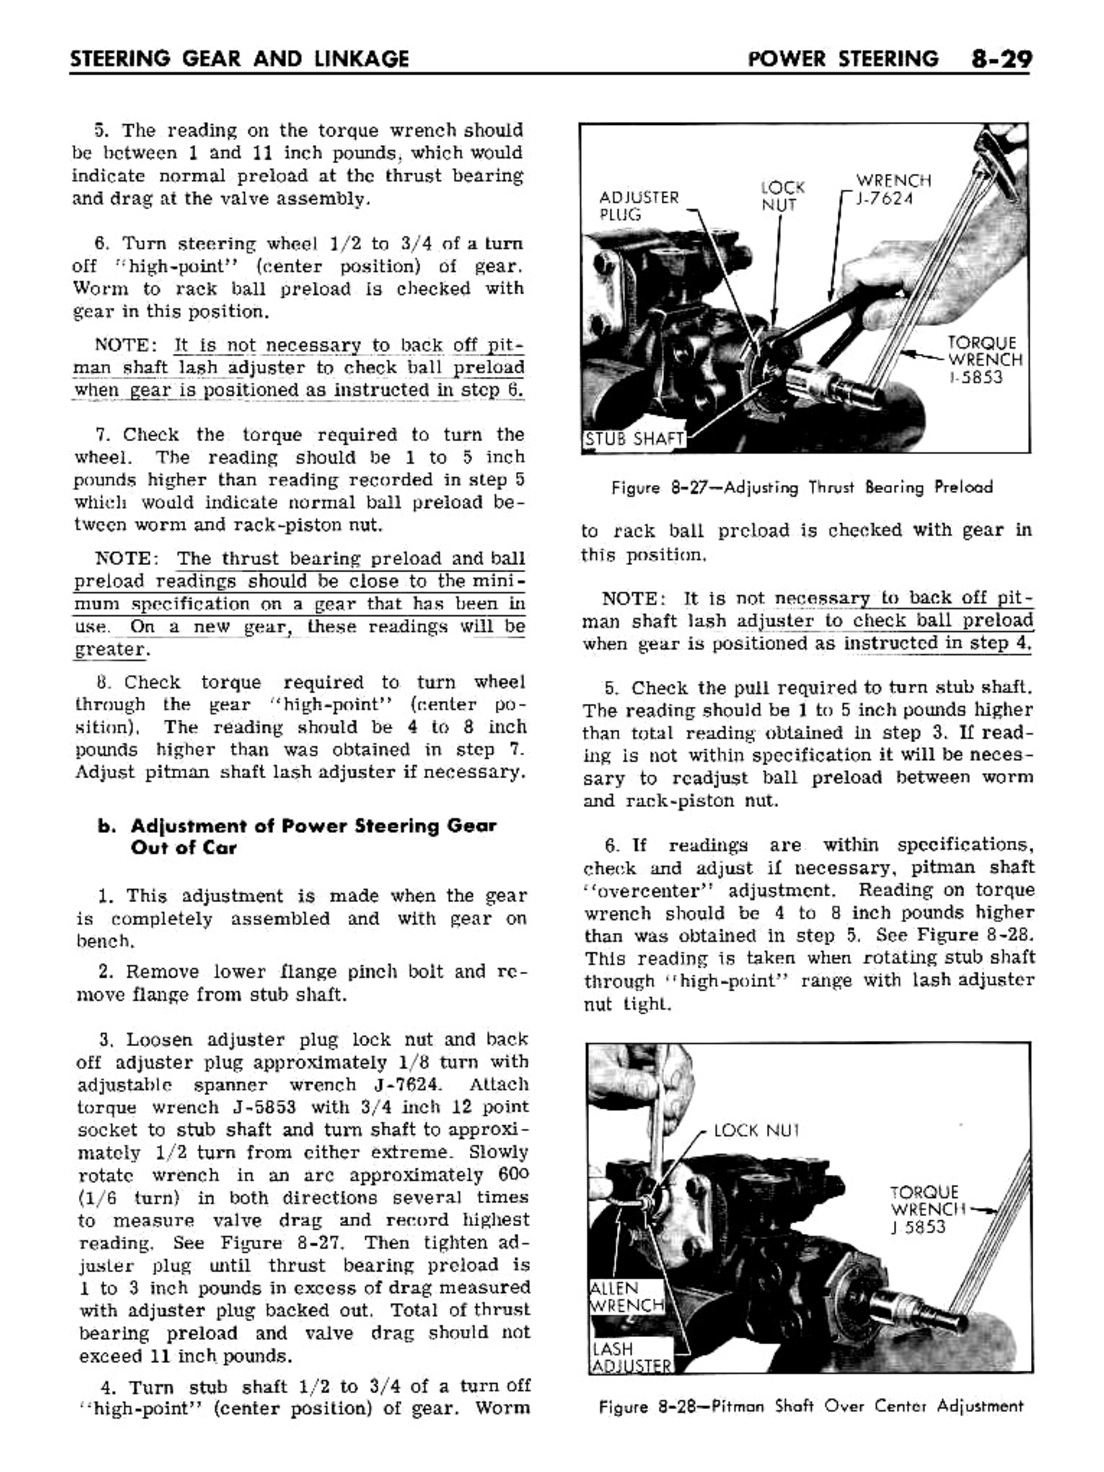 n_08 1961 Buick Shop Manual - Steering-029-029.jpg